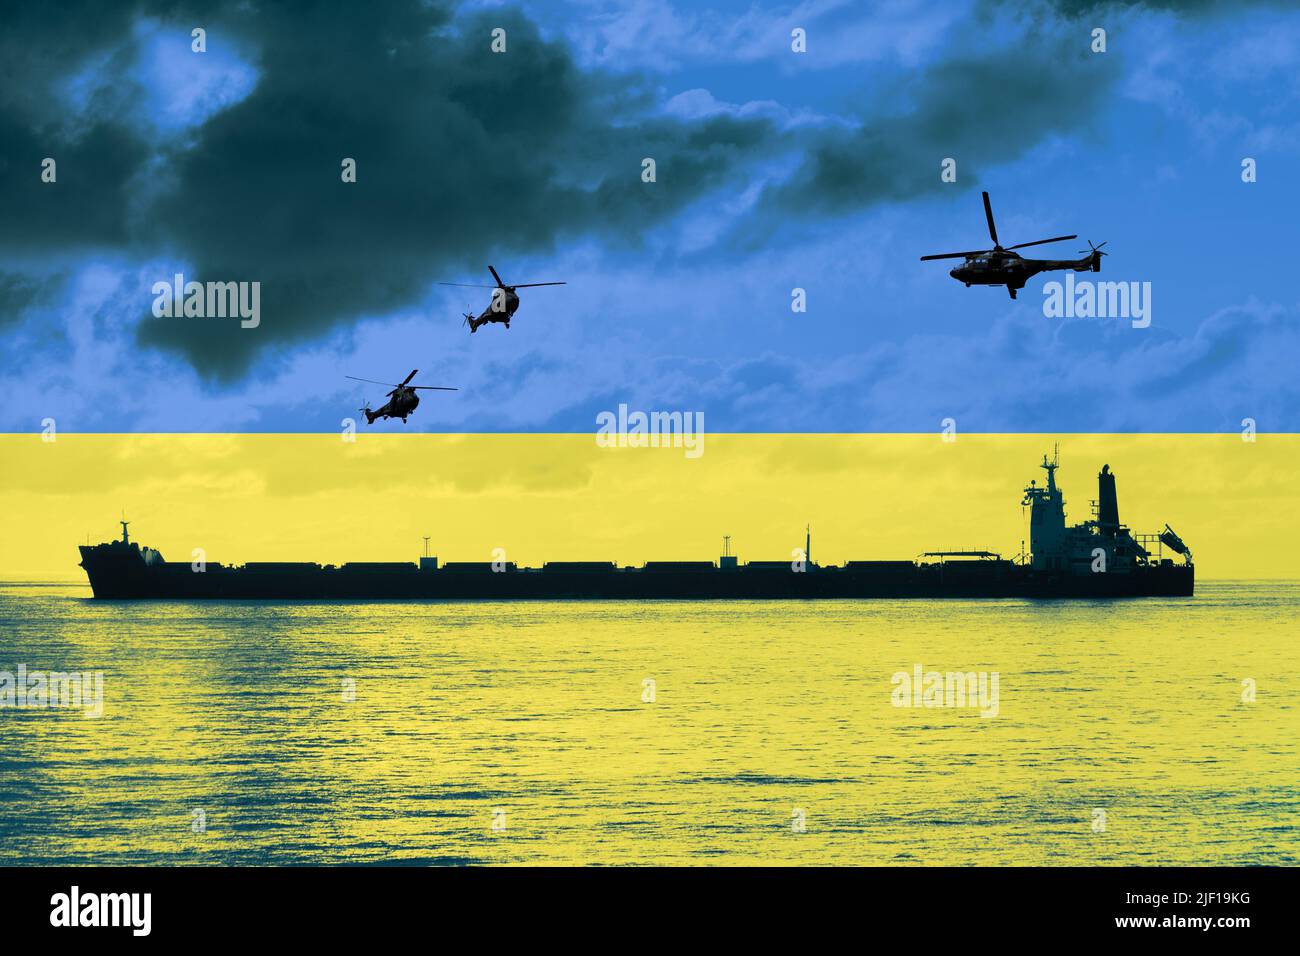 Buques de carga a granel y helicópteros militares superpuestos con bandera de Ucrania. Guerra de conflicto entre Rusia y Ucrania, trigo, cereales, escasez, precios mundiales de los alimentos... Foto de stock